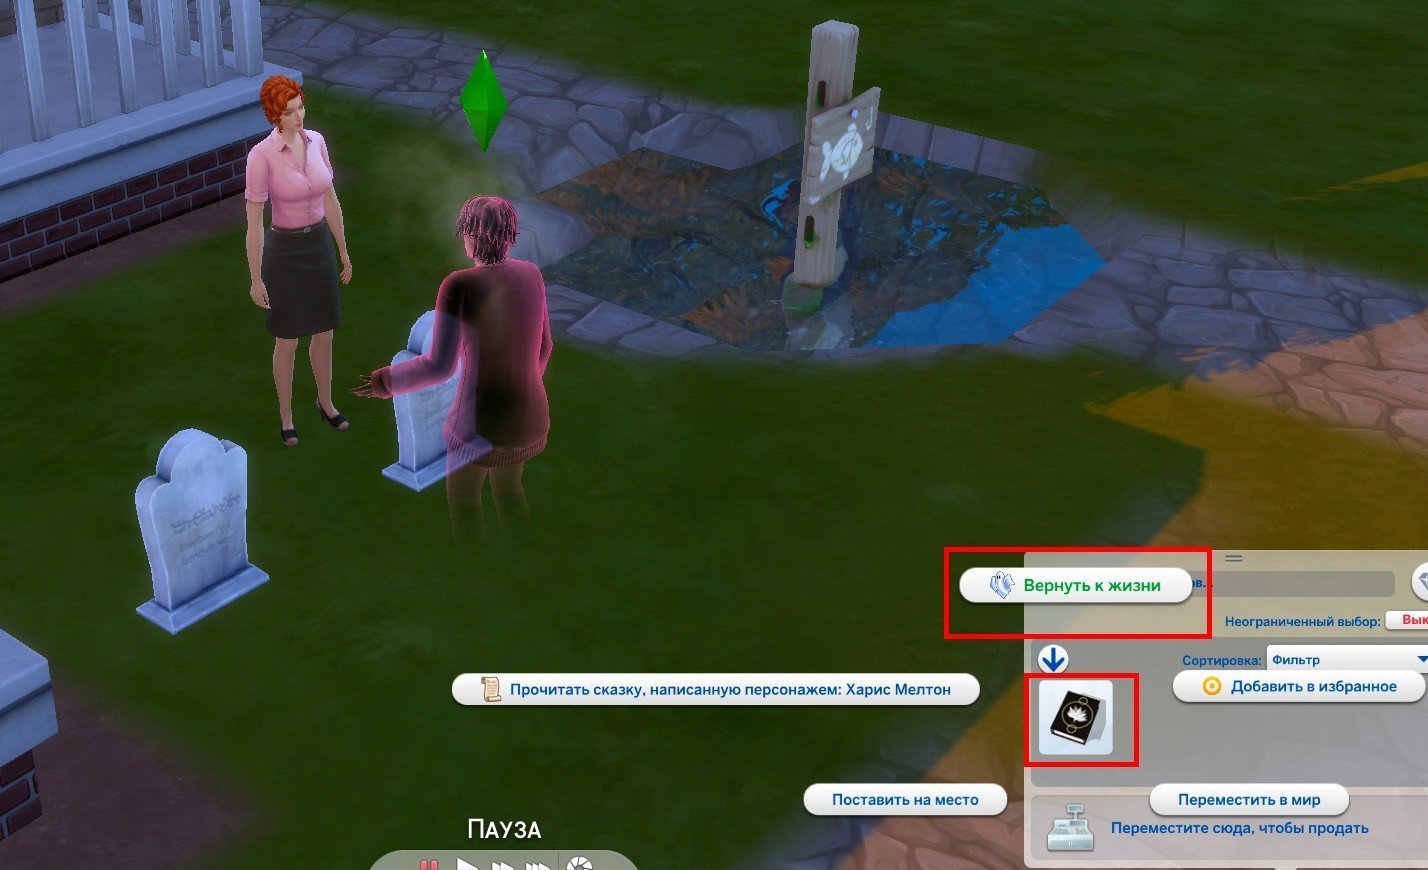 Форум The Sims : Виды смерти в The Sims 3 и аддонах - Форум The Sims